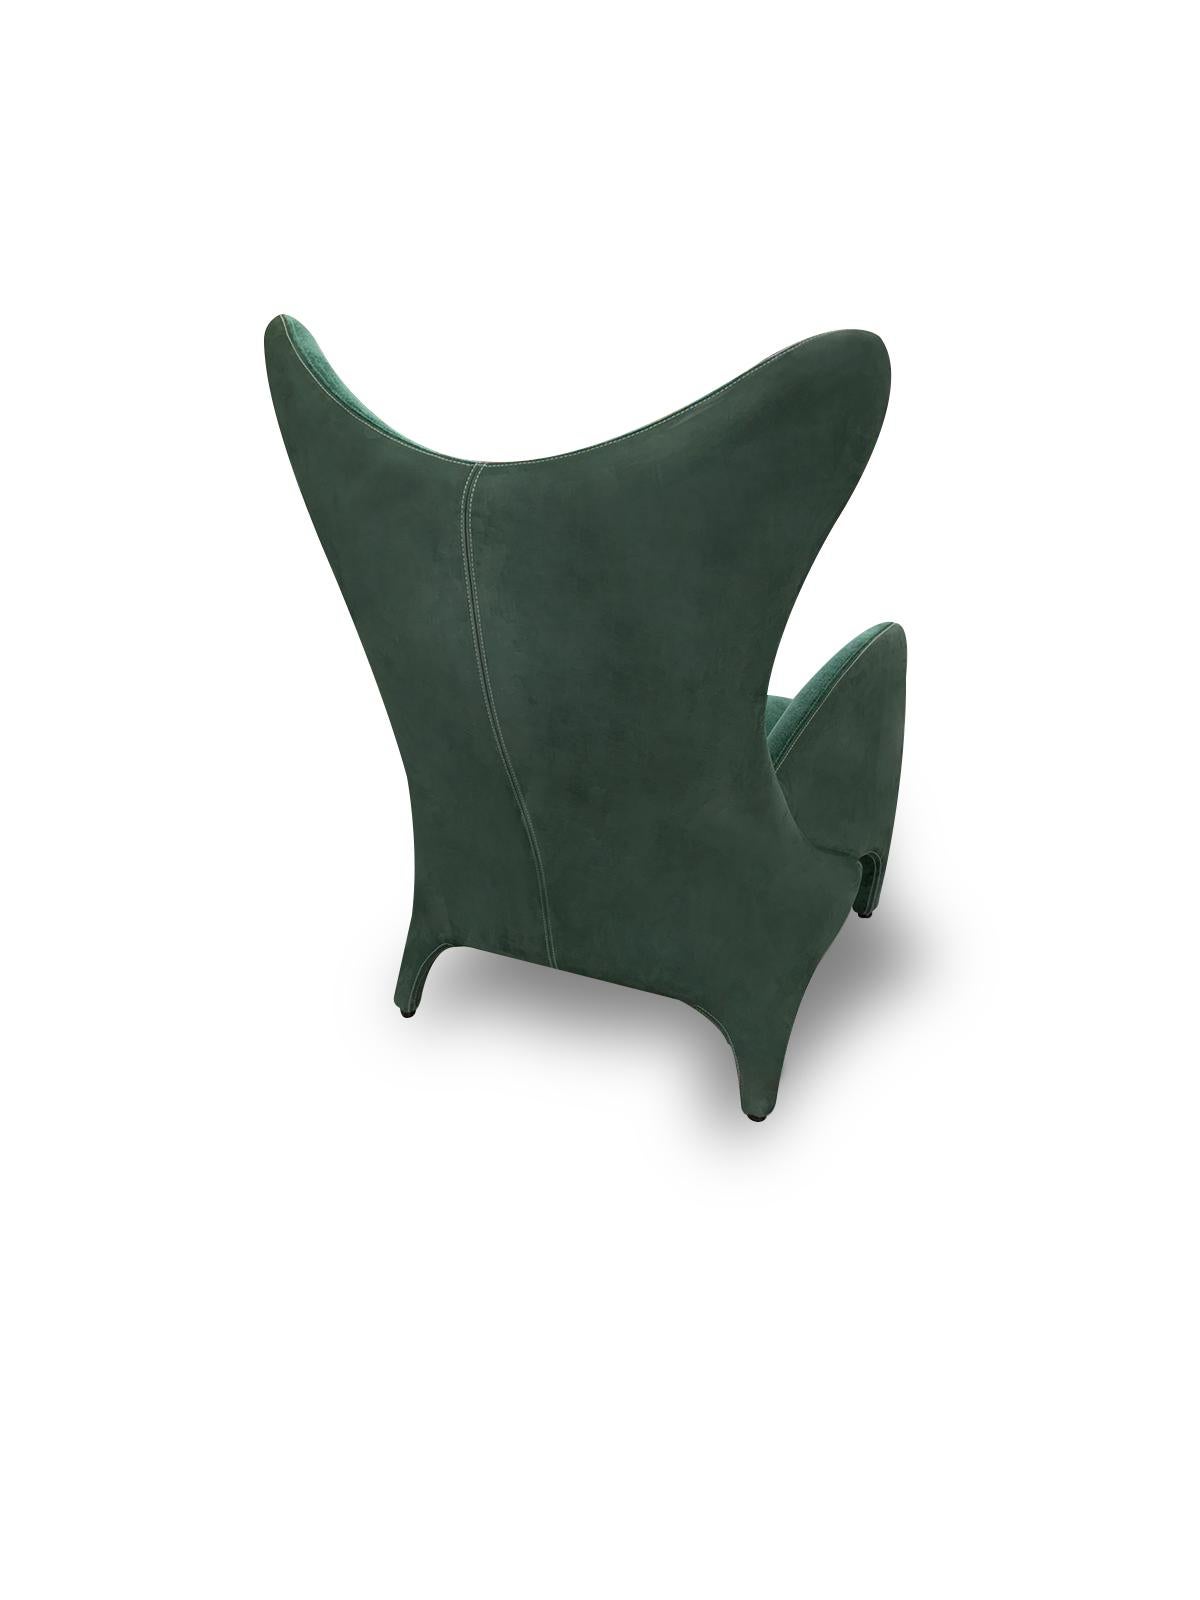 Italian Modern Wing Chair Upholstered in Emerald Green Velvet For Sale